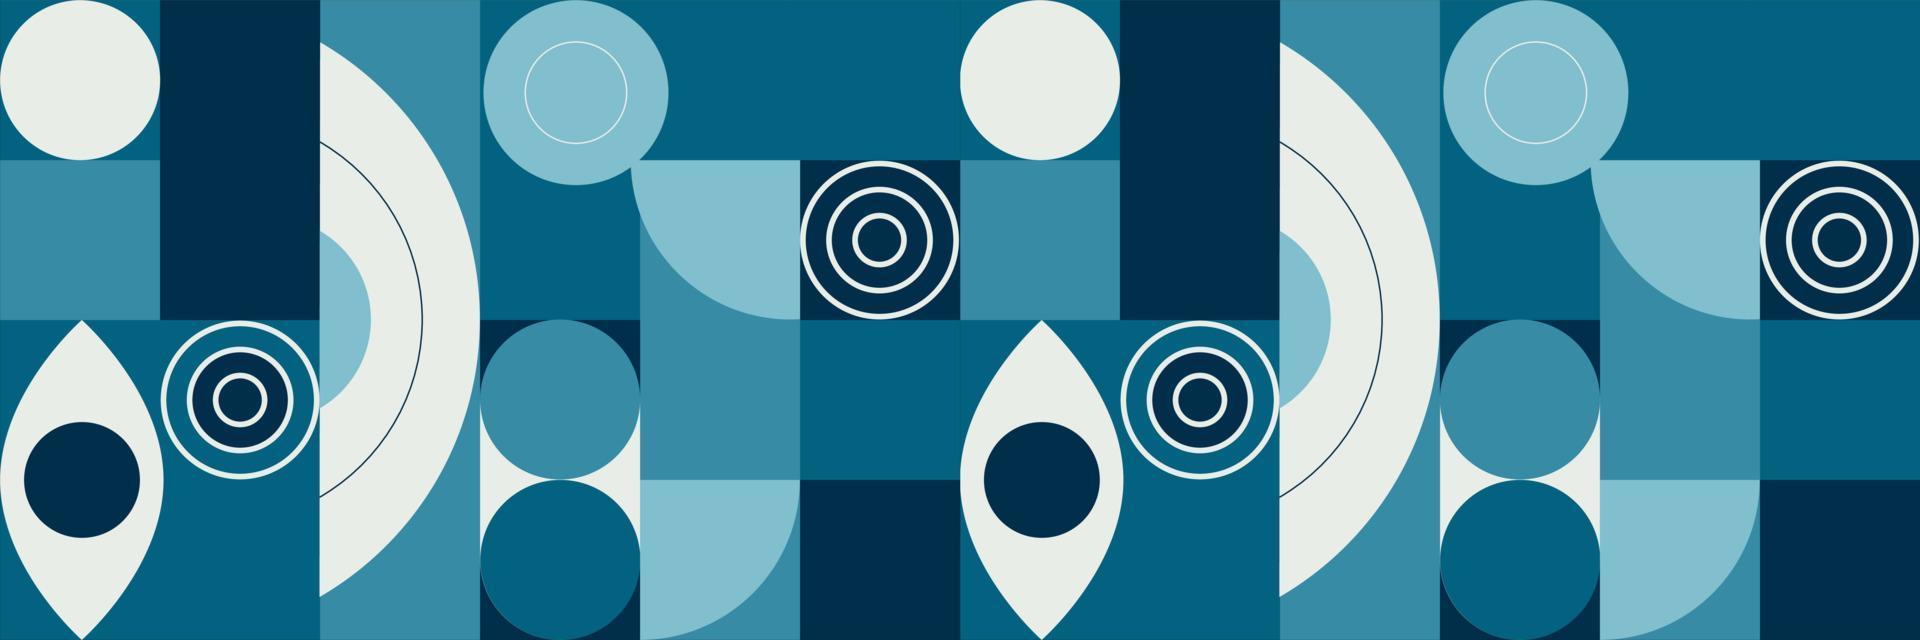 meetkundig patroon naadloos. blauw kleur met cirkels, rechthoeken, halve cirkel en ovaal. vector illustratie.